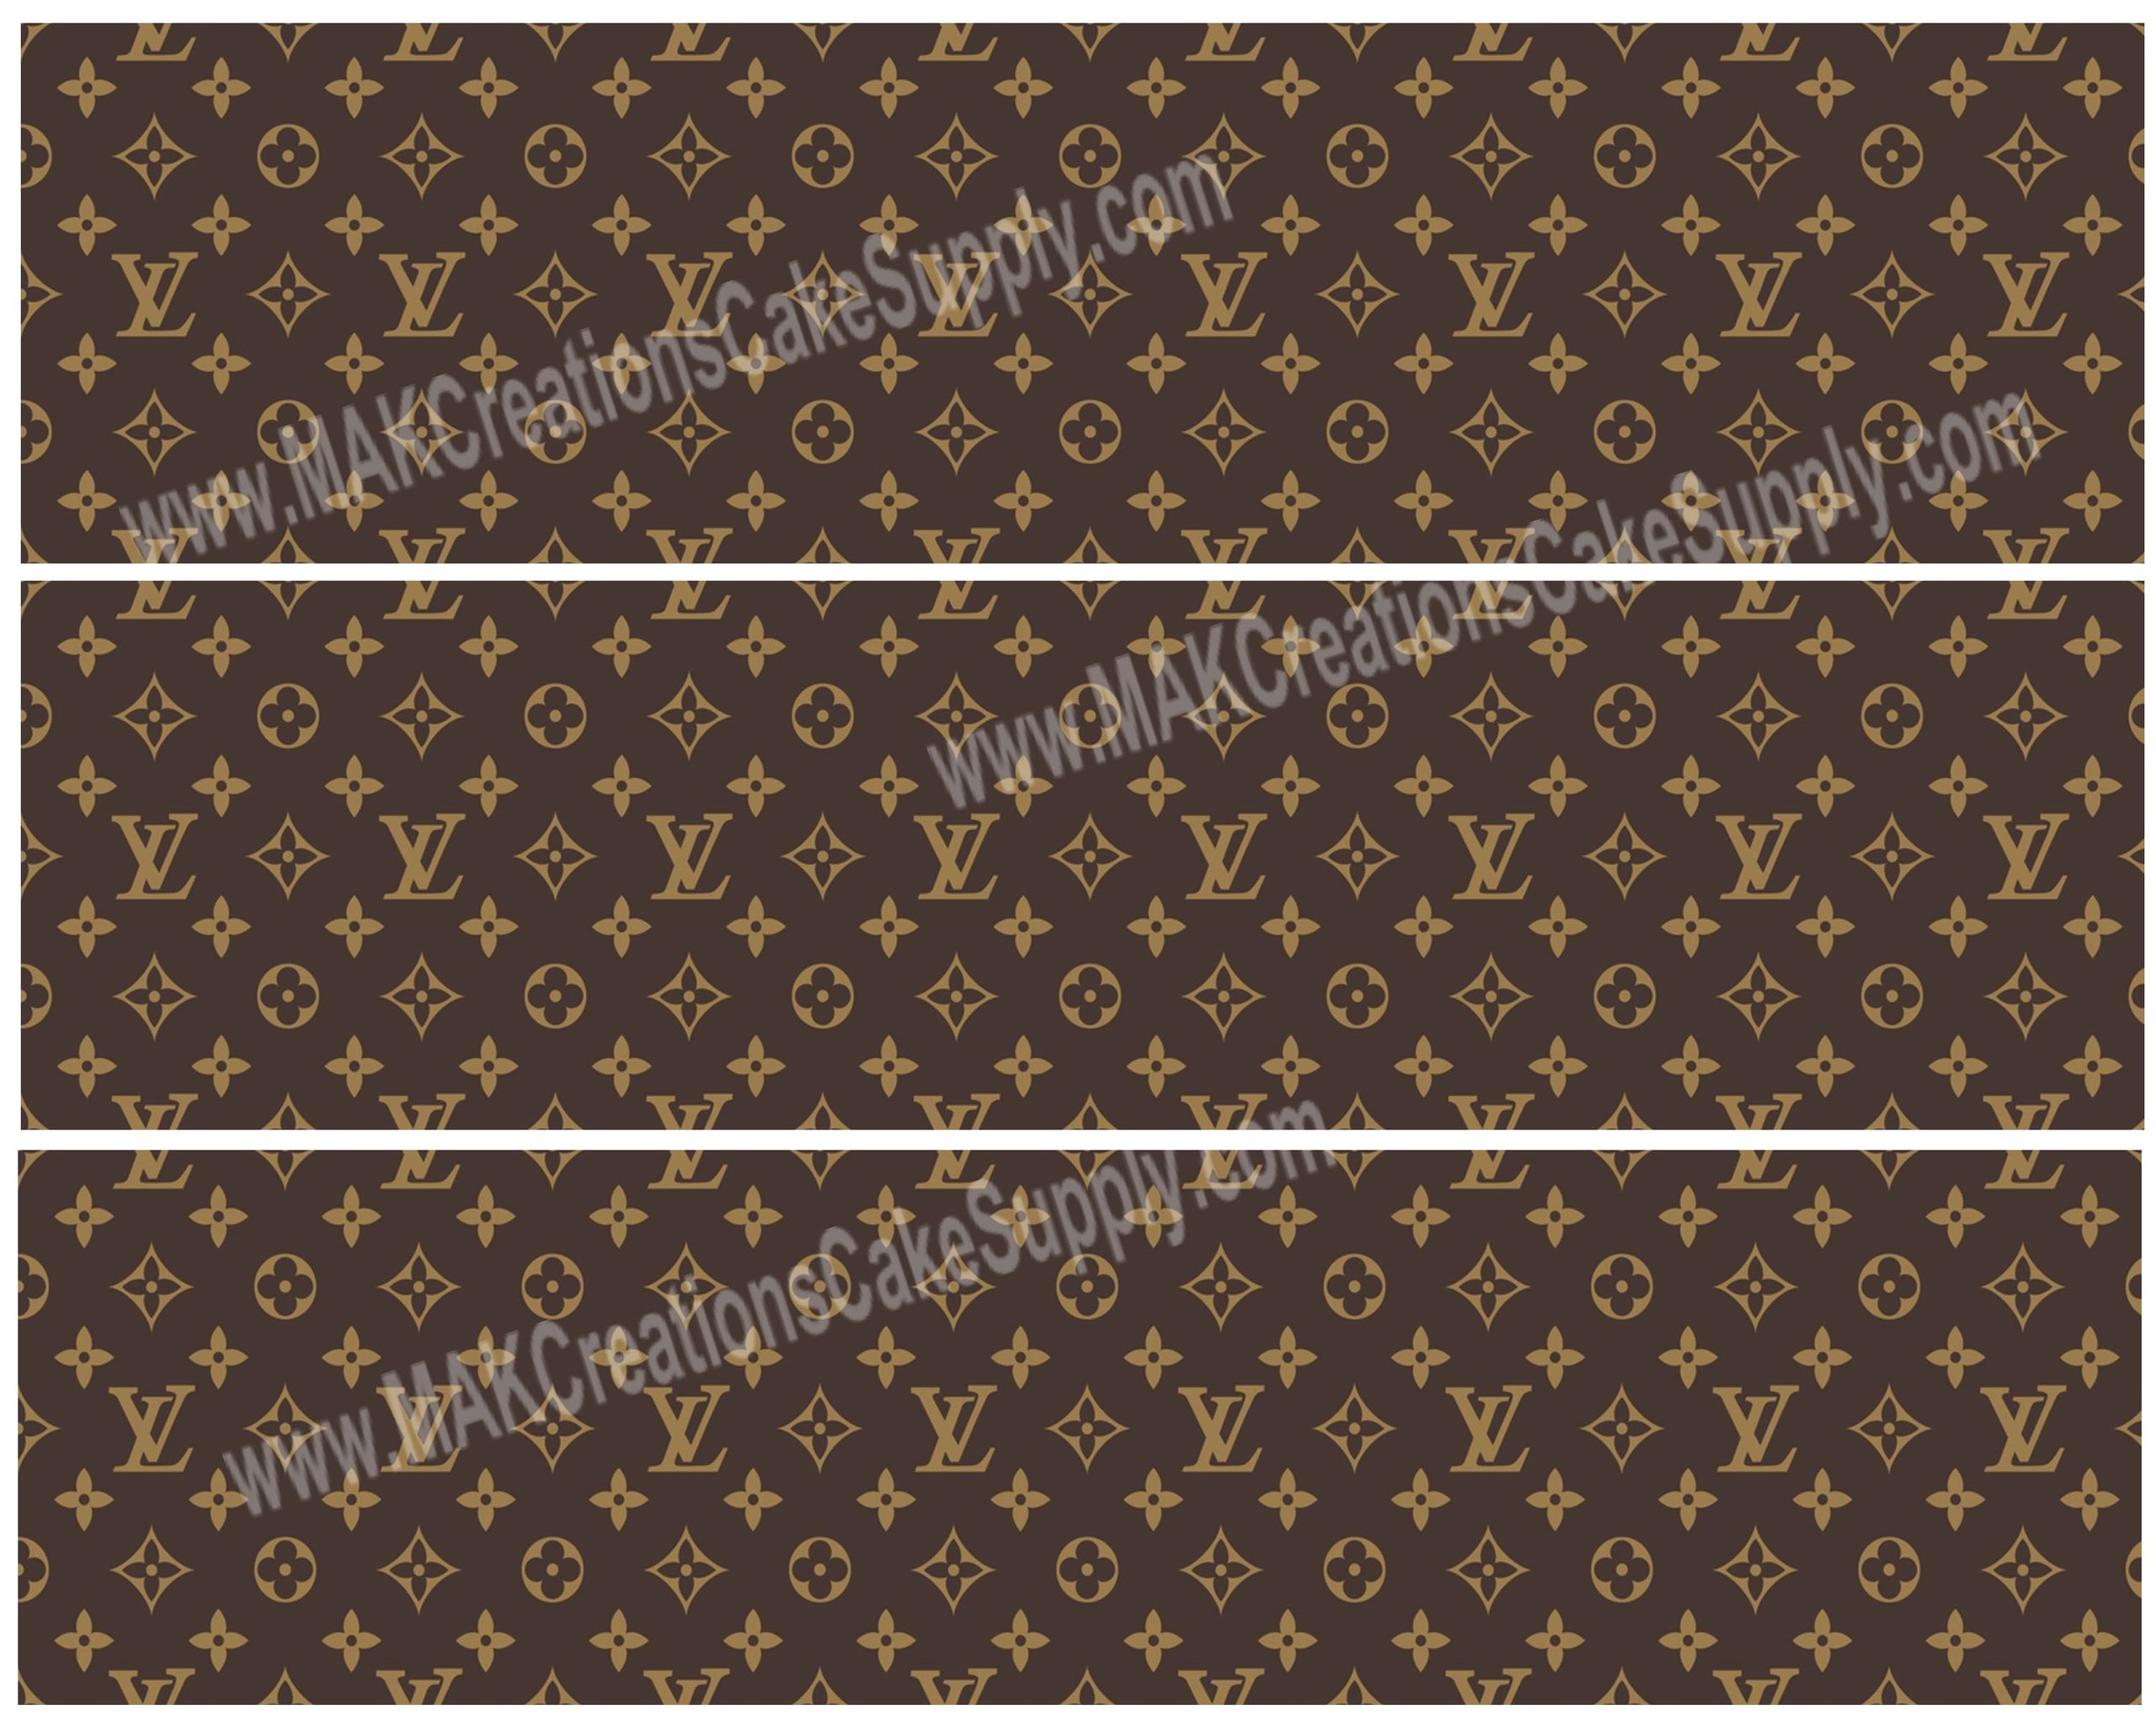 Louis Vuitton LV Brown Edible Image - Edible Perfections